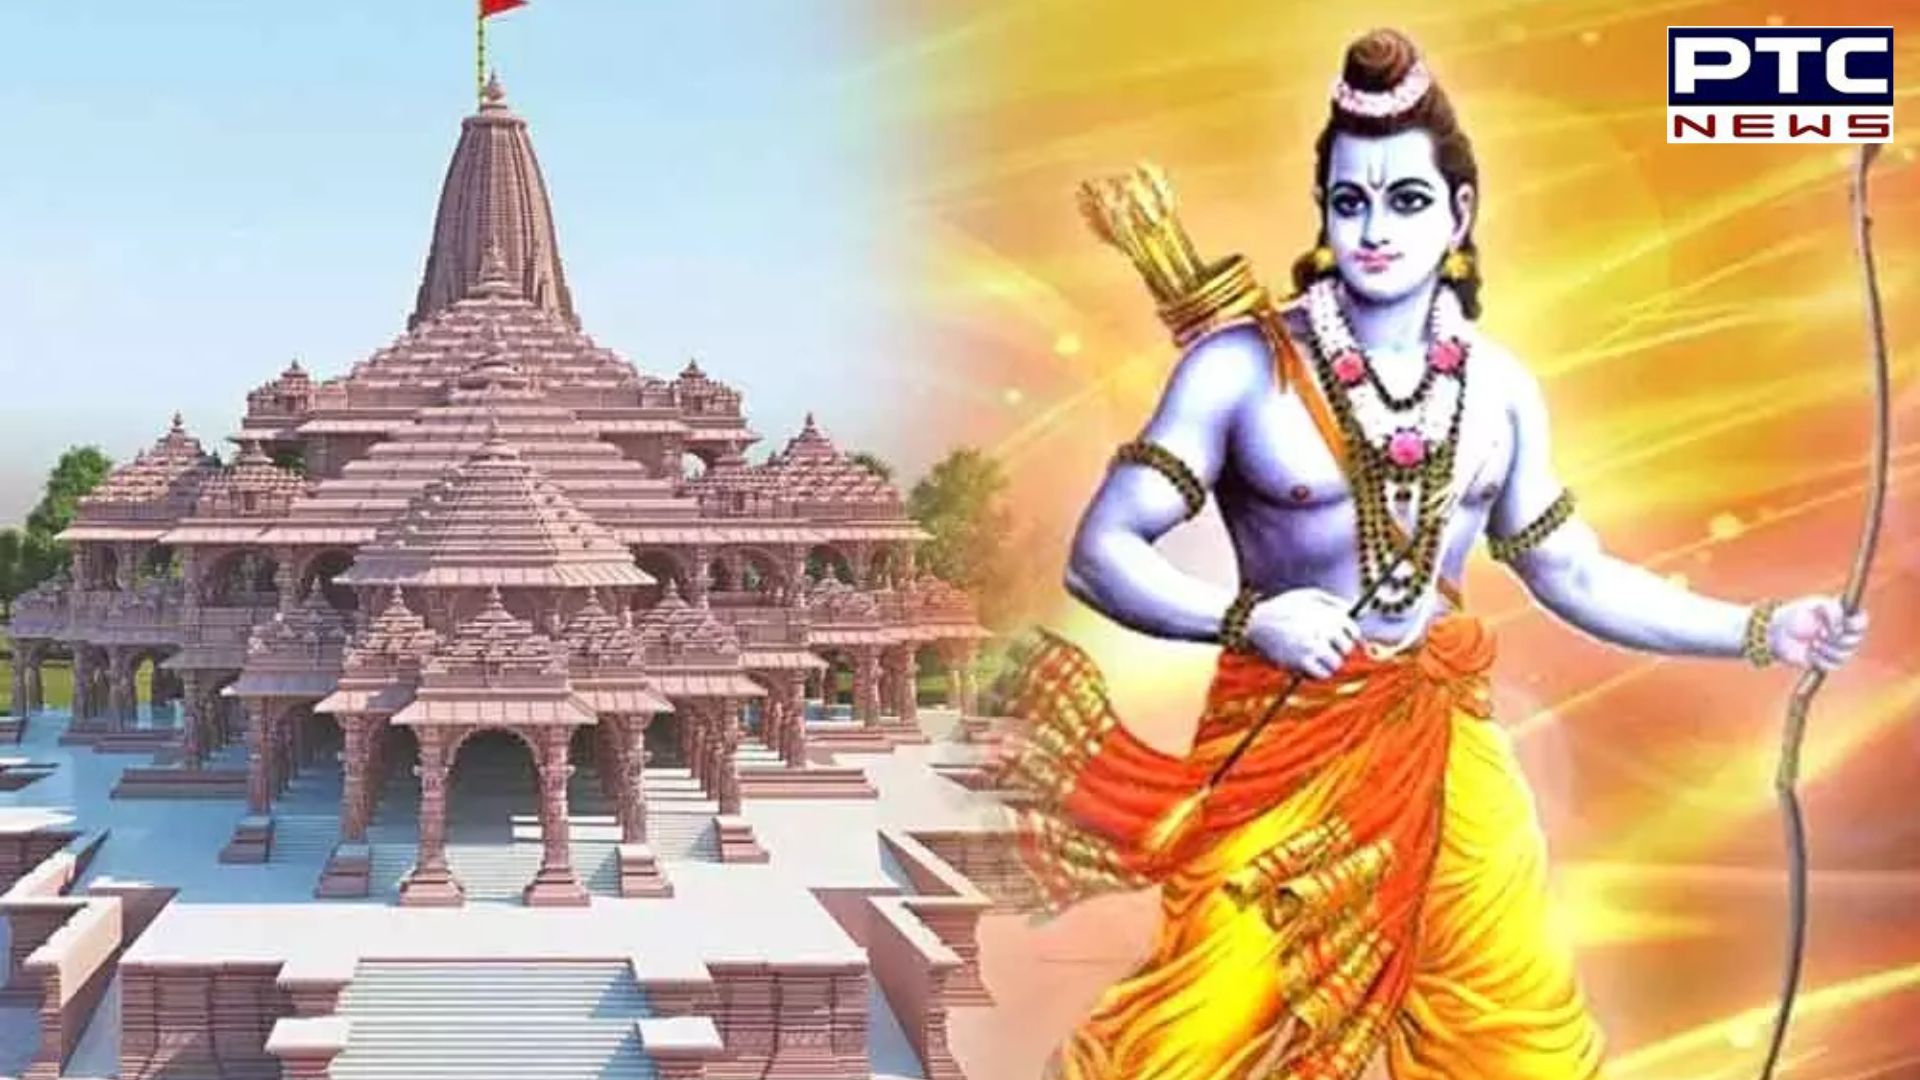 Ram Mandir Utsav: 160 ਦੇਸ਼ਾਂ 'ਚ ਵਿਖਾਈ ਦੇਵੇਗੀ ਮੰਗਲਾ ਆਰਤੀ ਤੇ ਉਤਸਵ ਦੀ ਝਲਕ